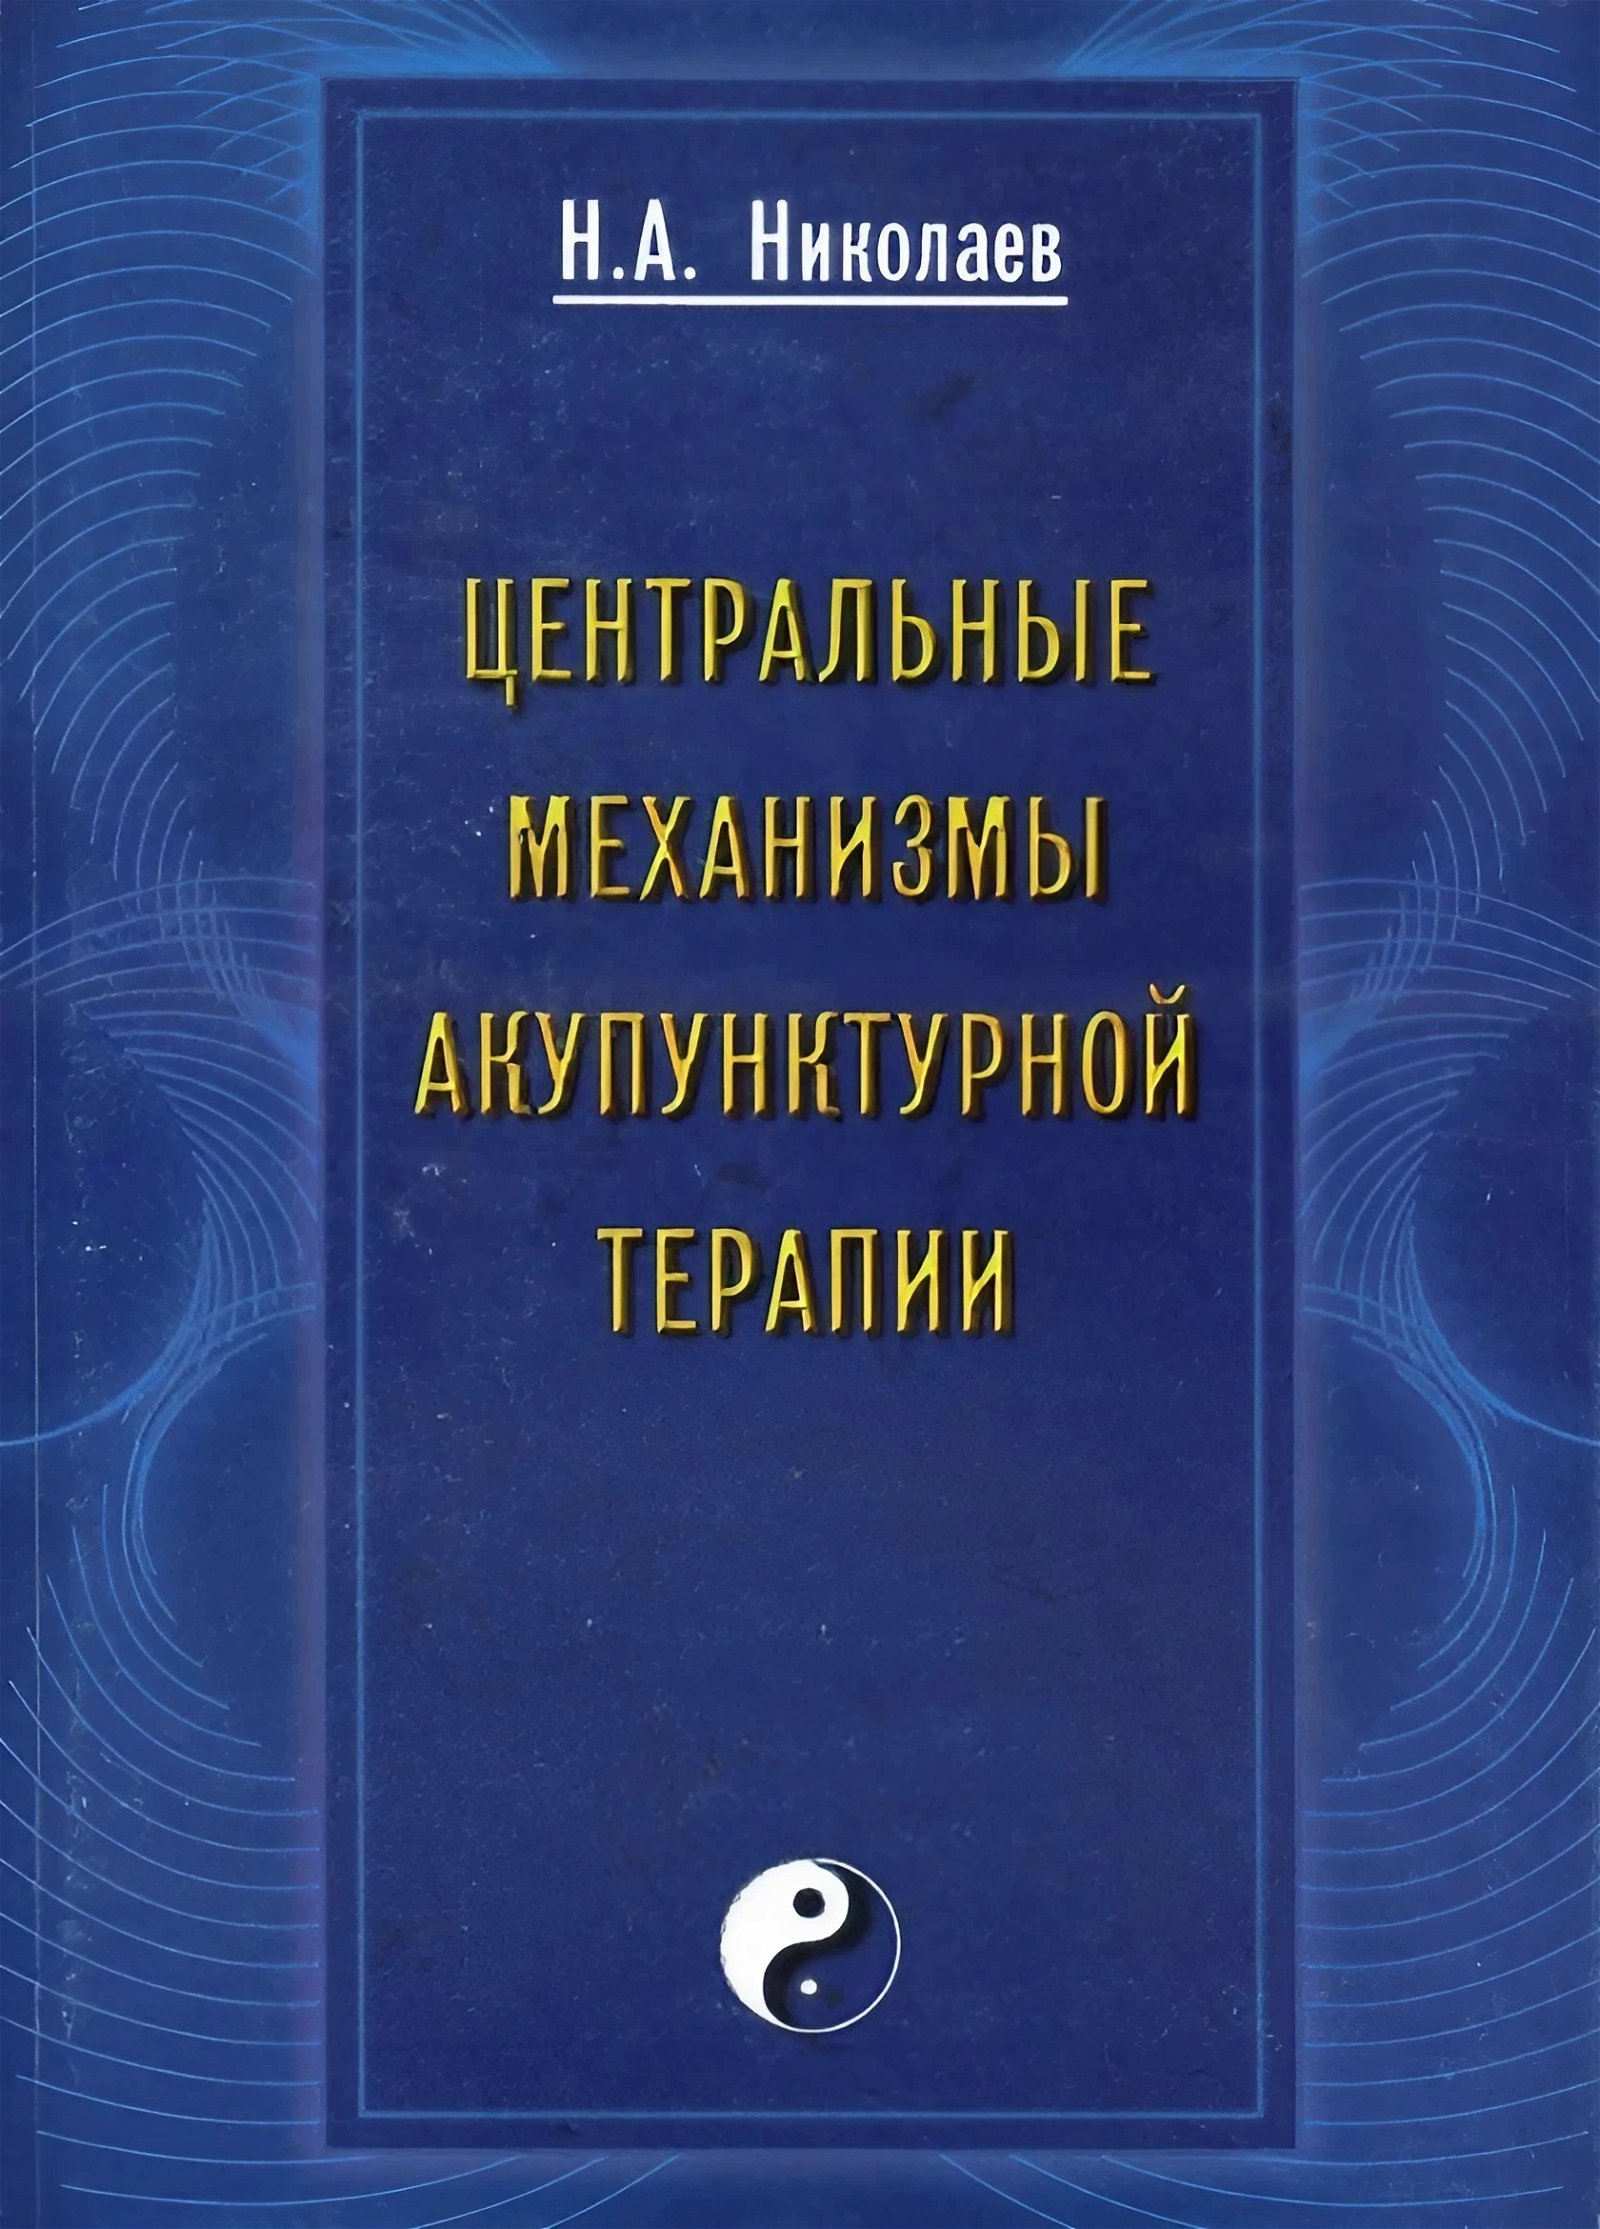 Купить книгу Центральные механизмы акупунктурной терапии Николаев Н. А. в интернет-магазине Ариаварта